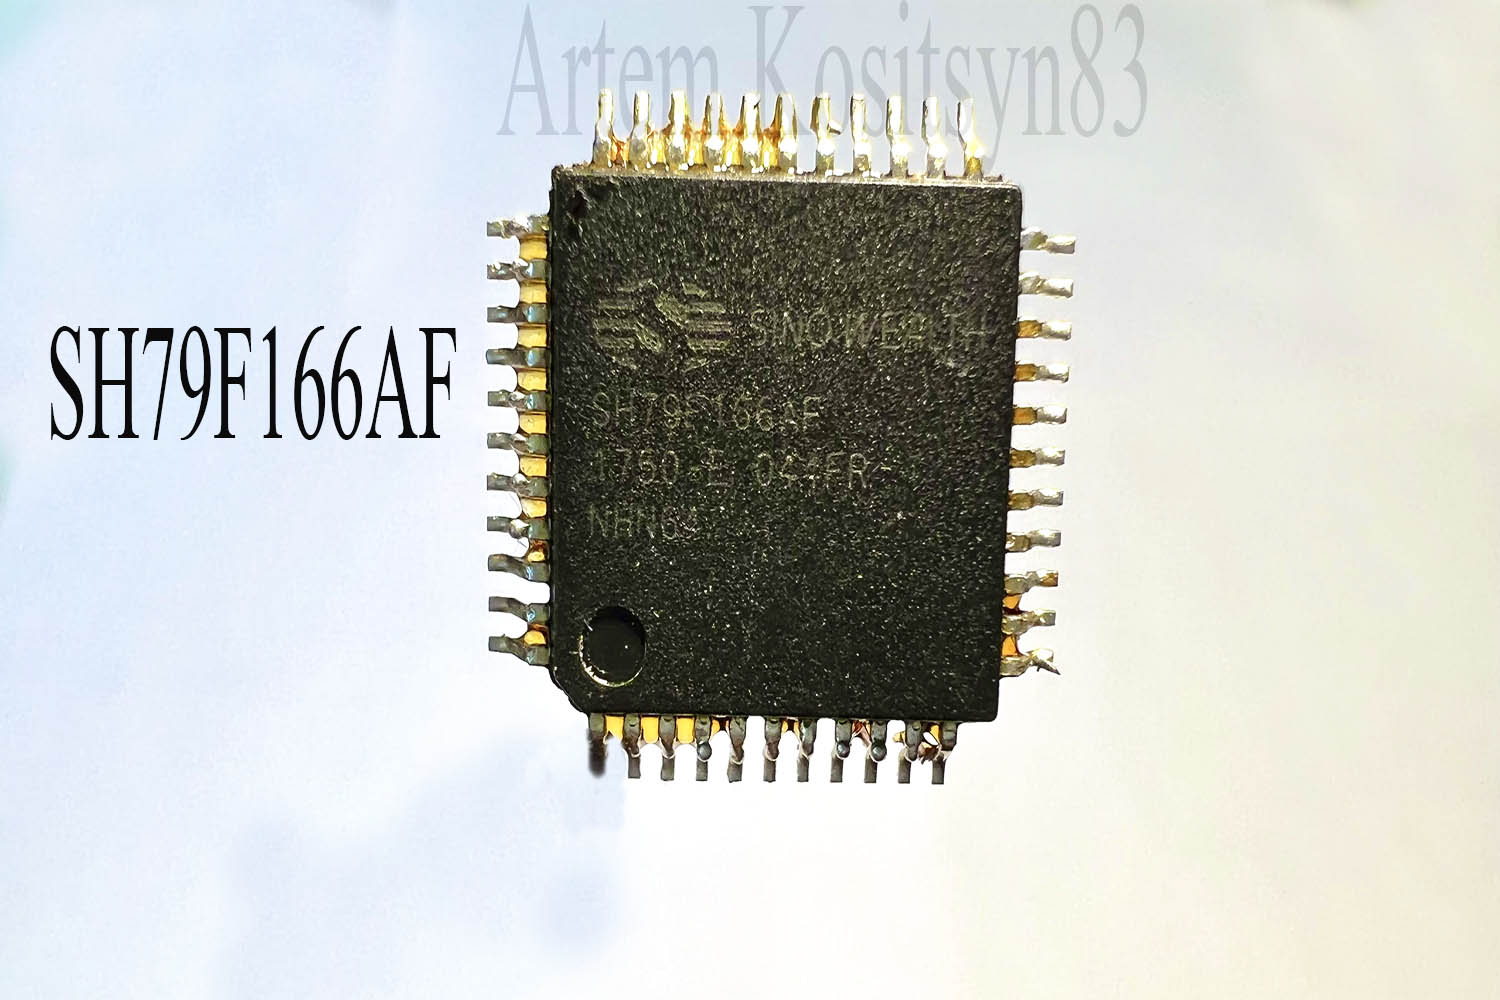 Подробнее о статье SH79F166AF.Microcontroller.Datasheet